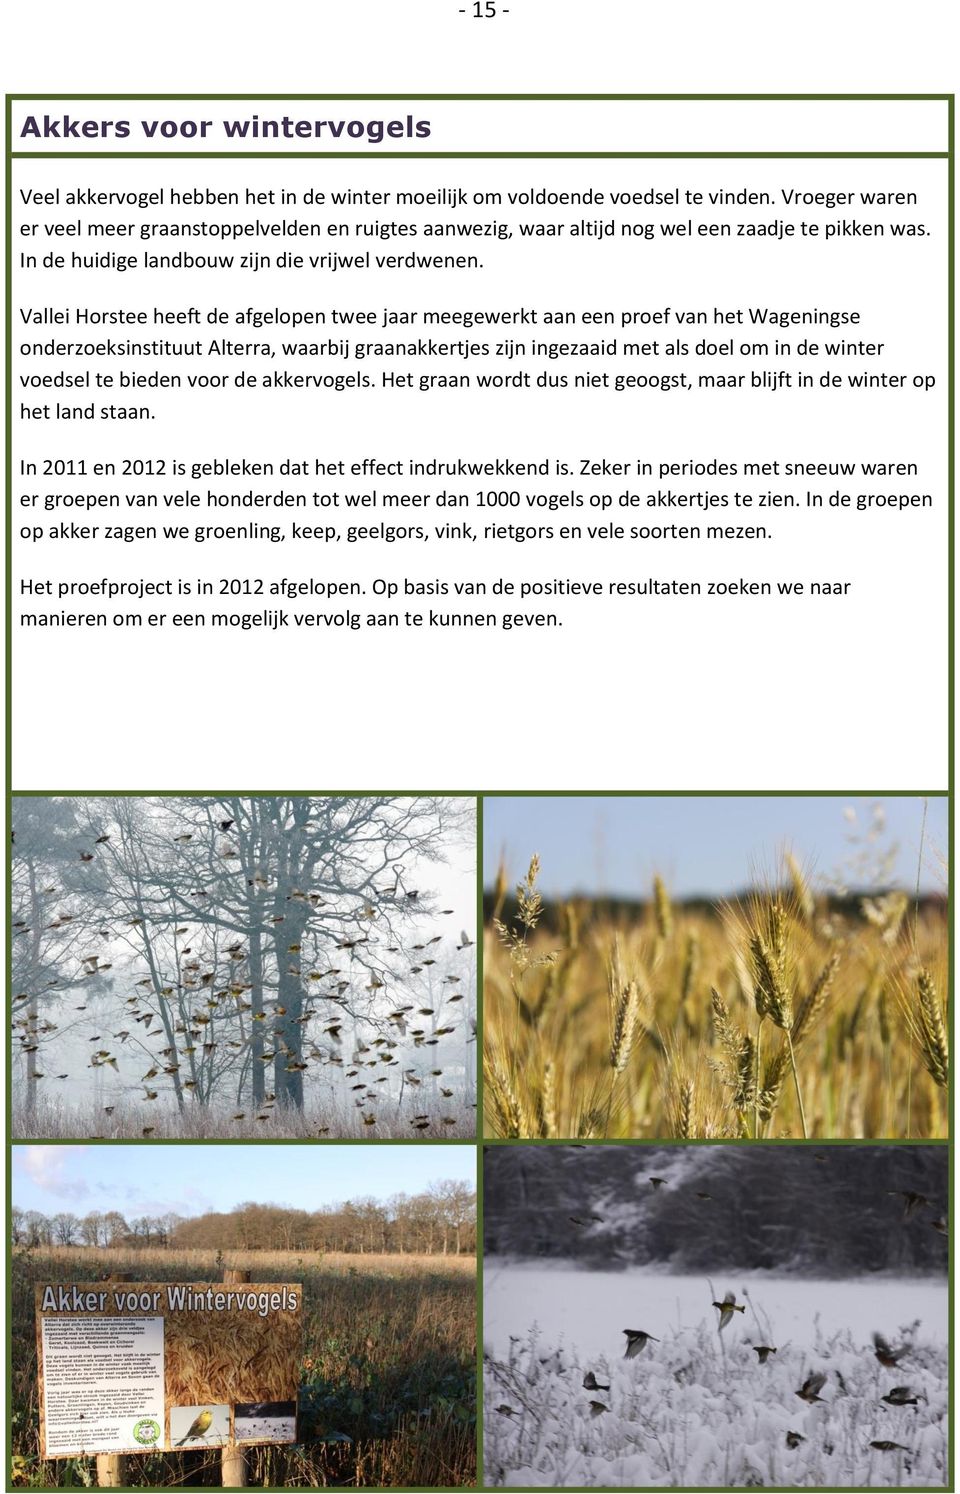 Vallei Horstee heeft de afgelopen twee jaar meegewerkt aan een proef van het Wageningse onderzoeksinstituut Alterra, waarbij graanakkertjes zijn ingezaaid met als doel om in de winter voedsel te